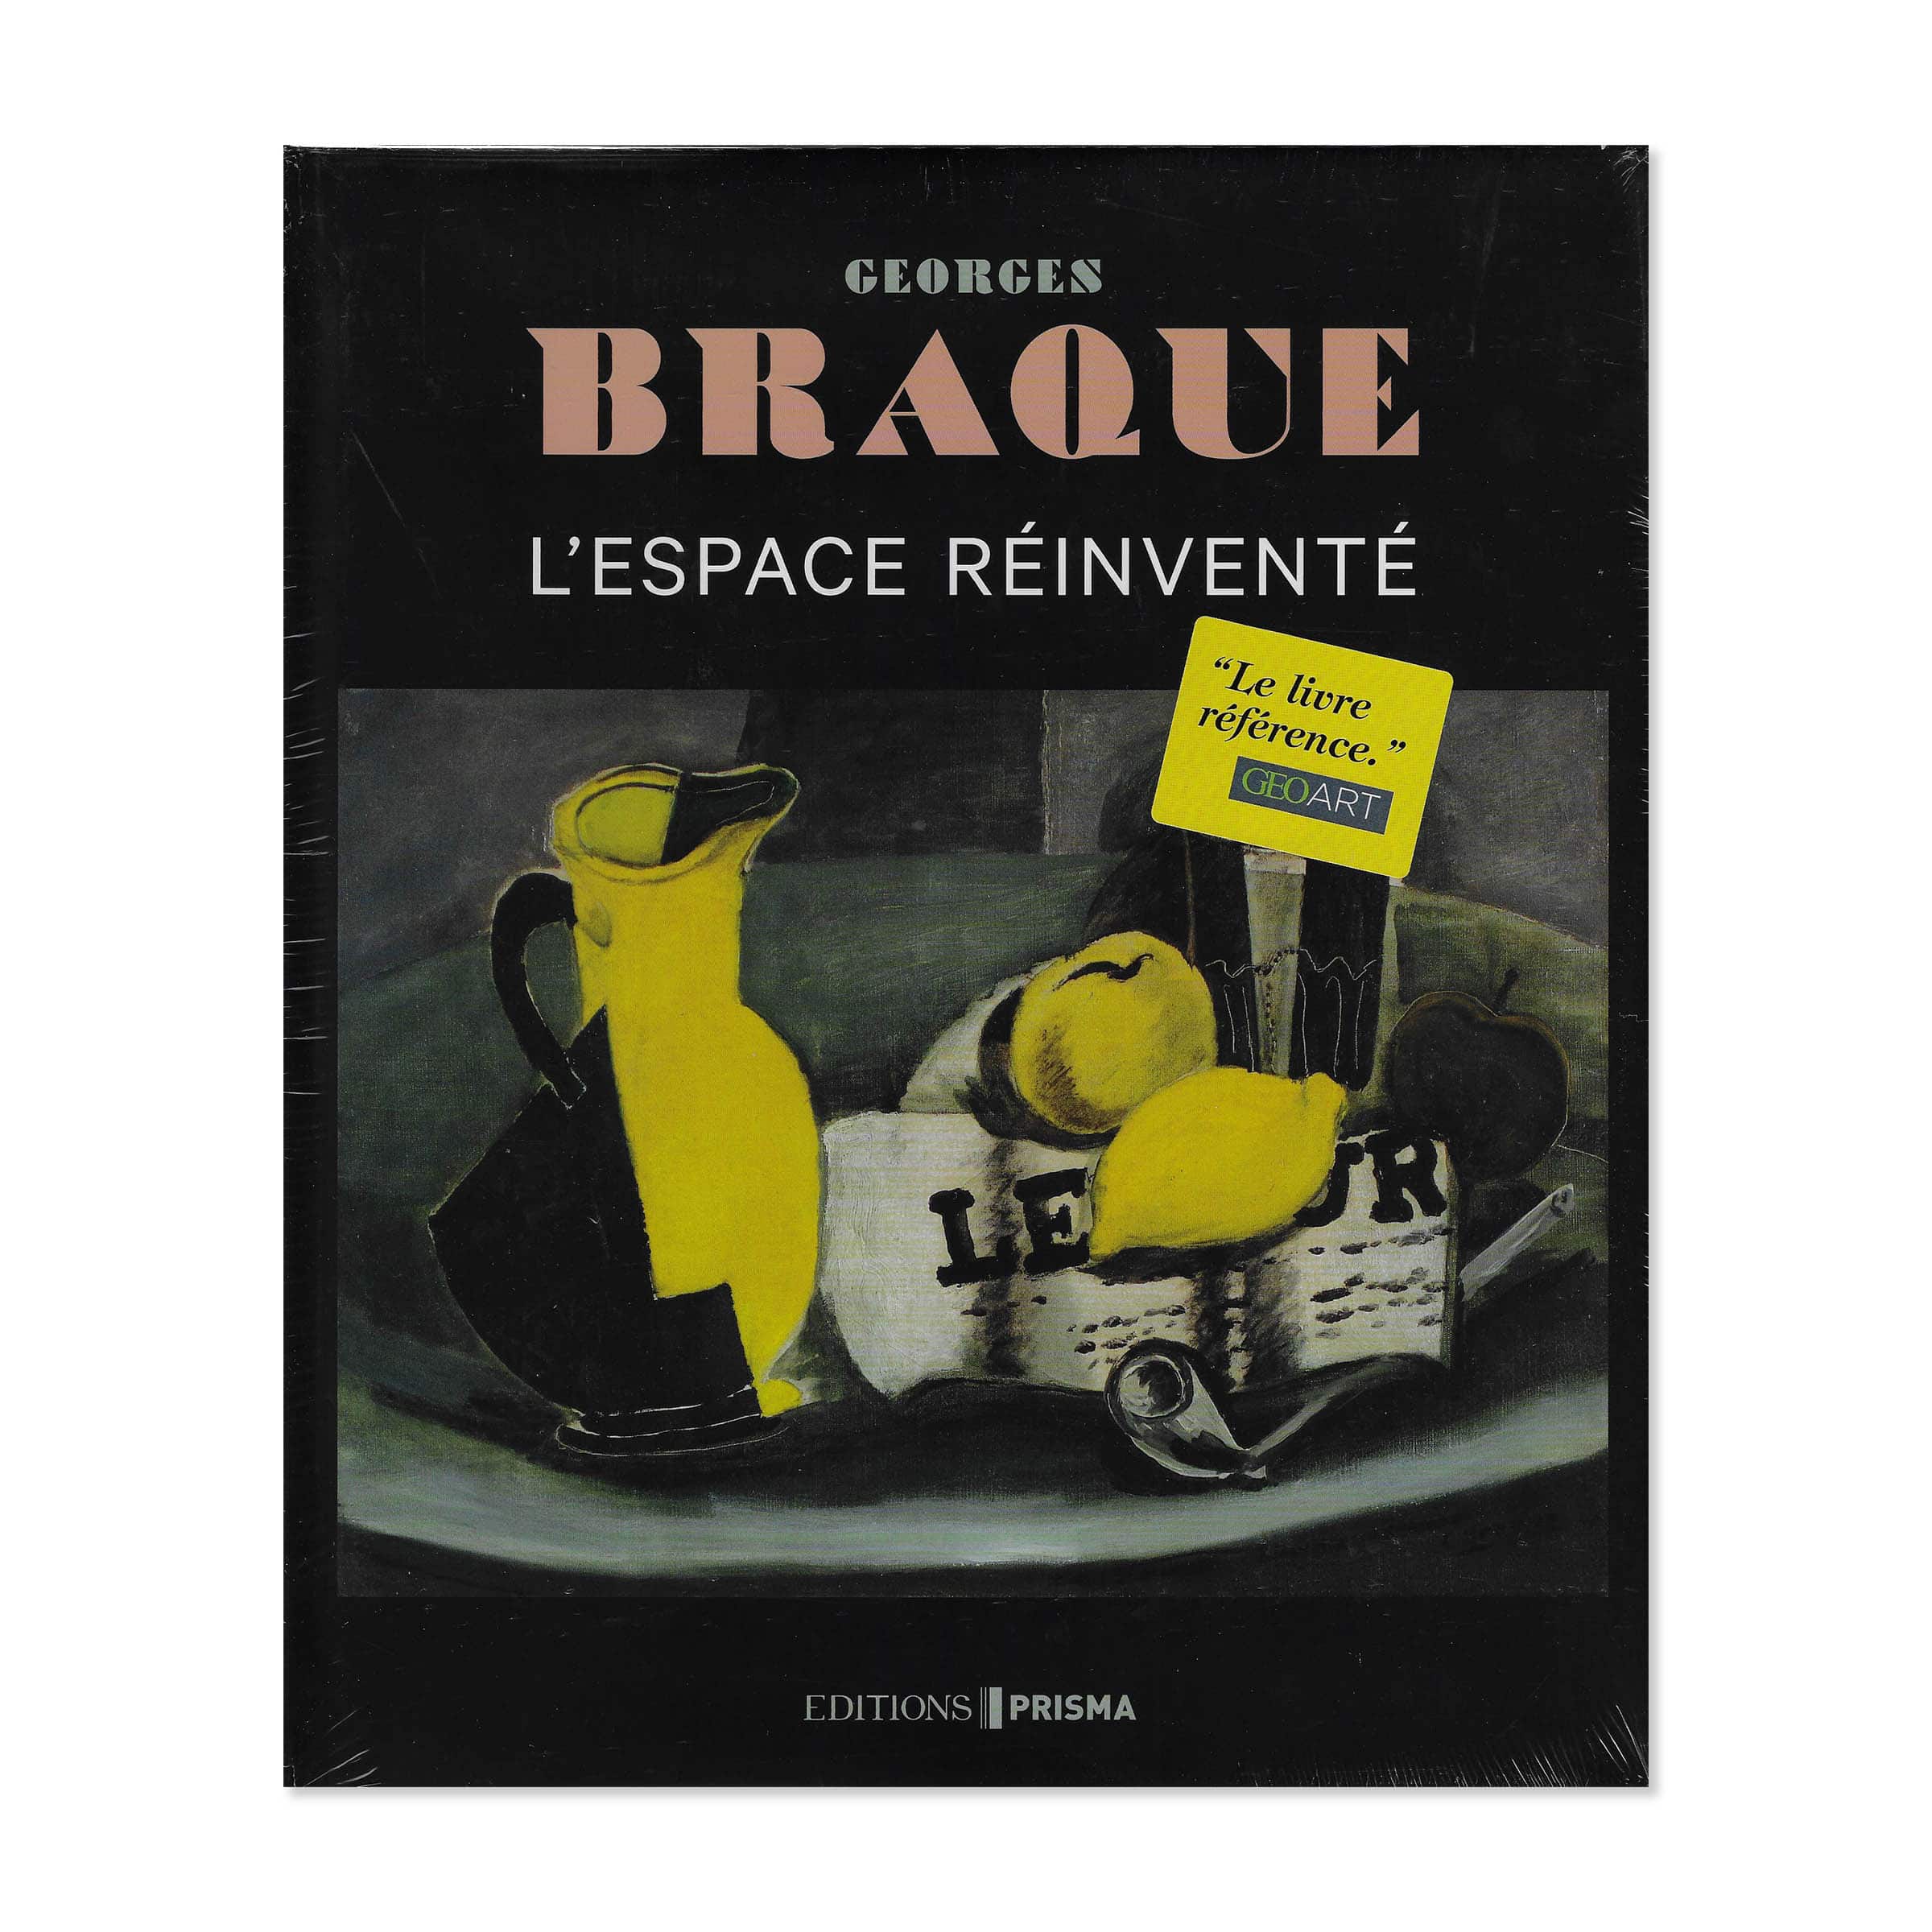 Braque. L'Espace reinventé. Cover view